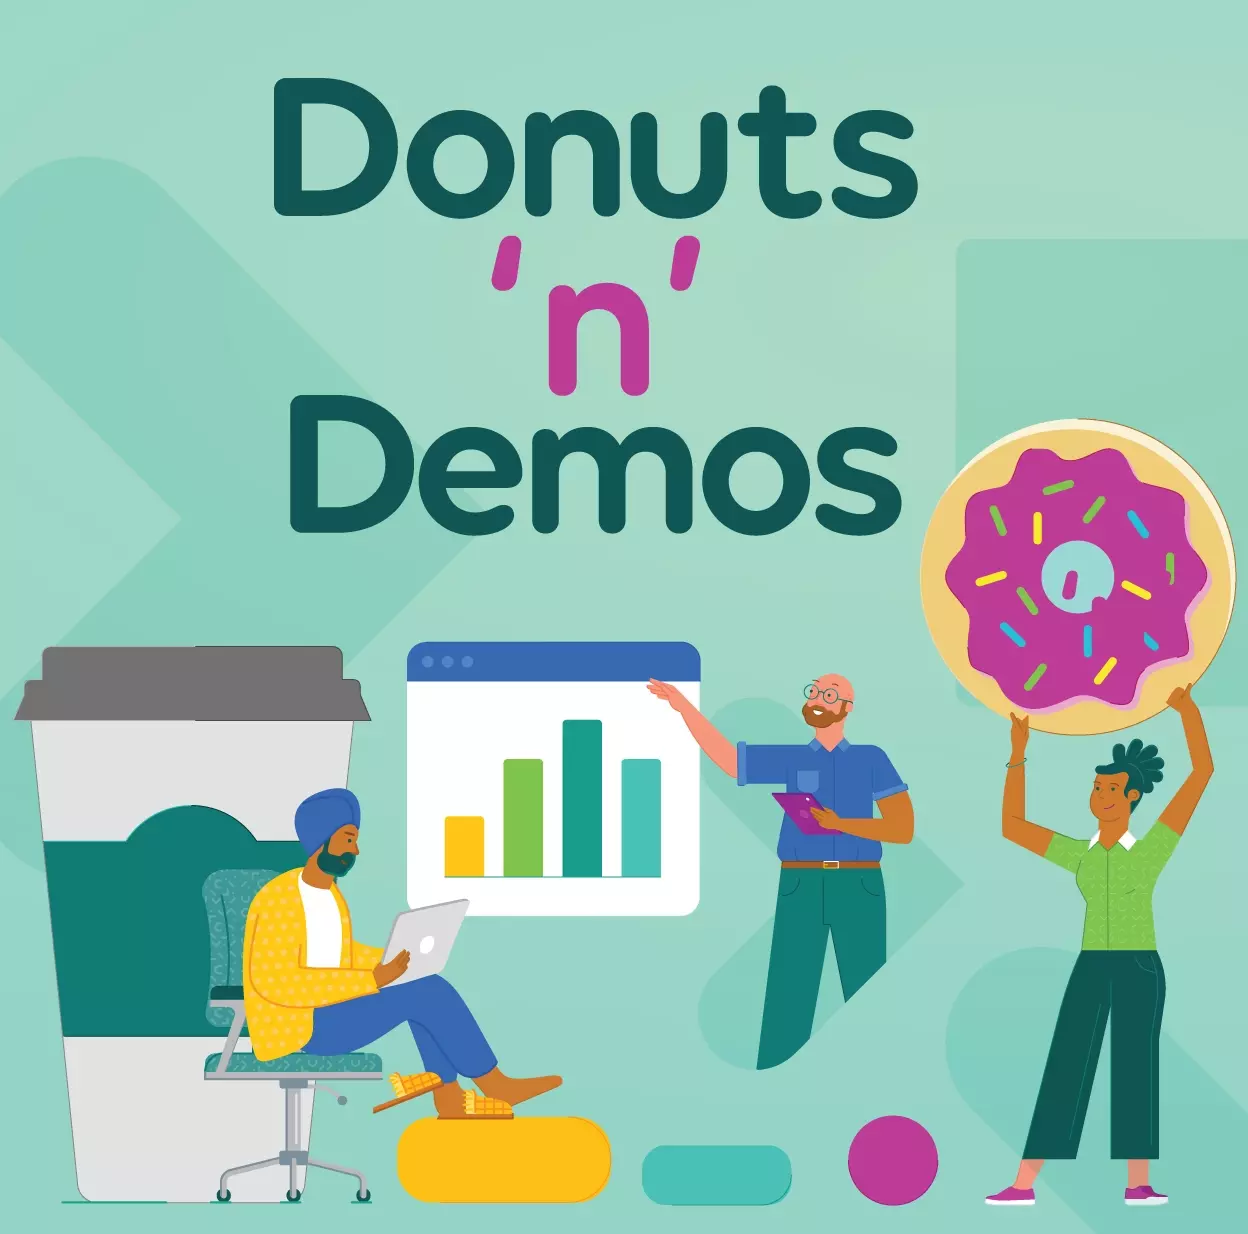 Donuts 'n' Demos